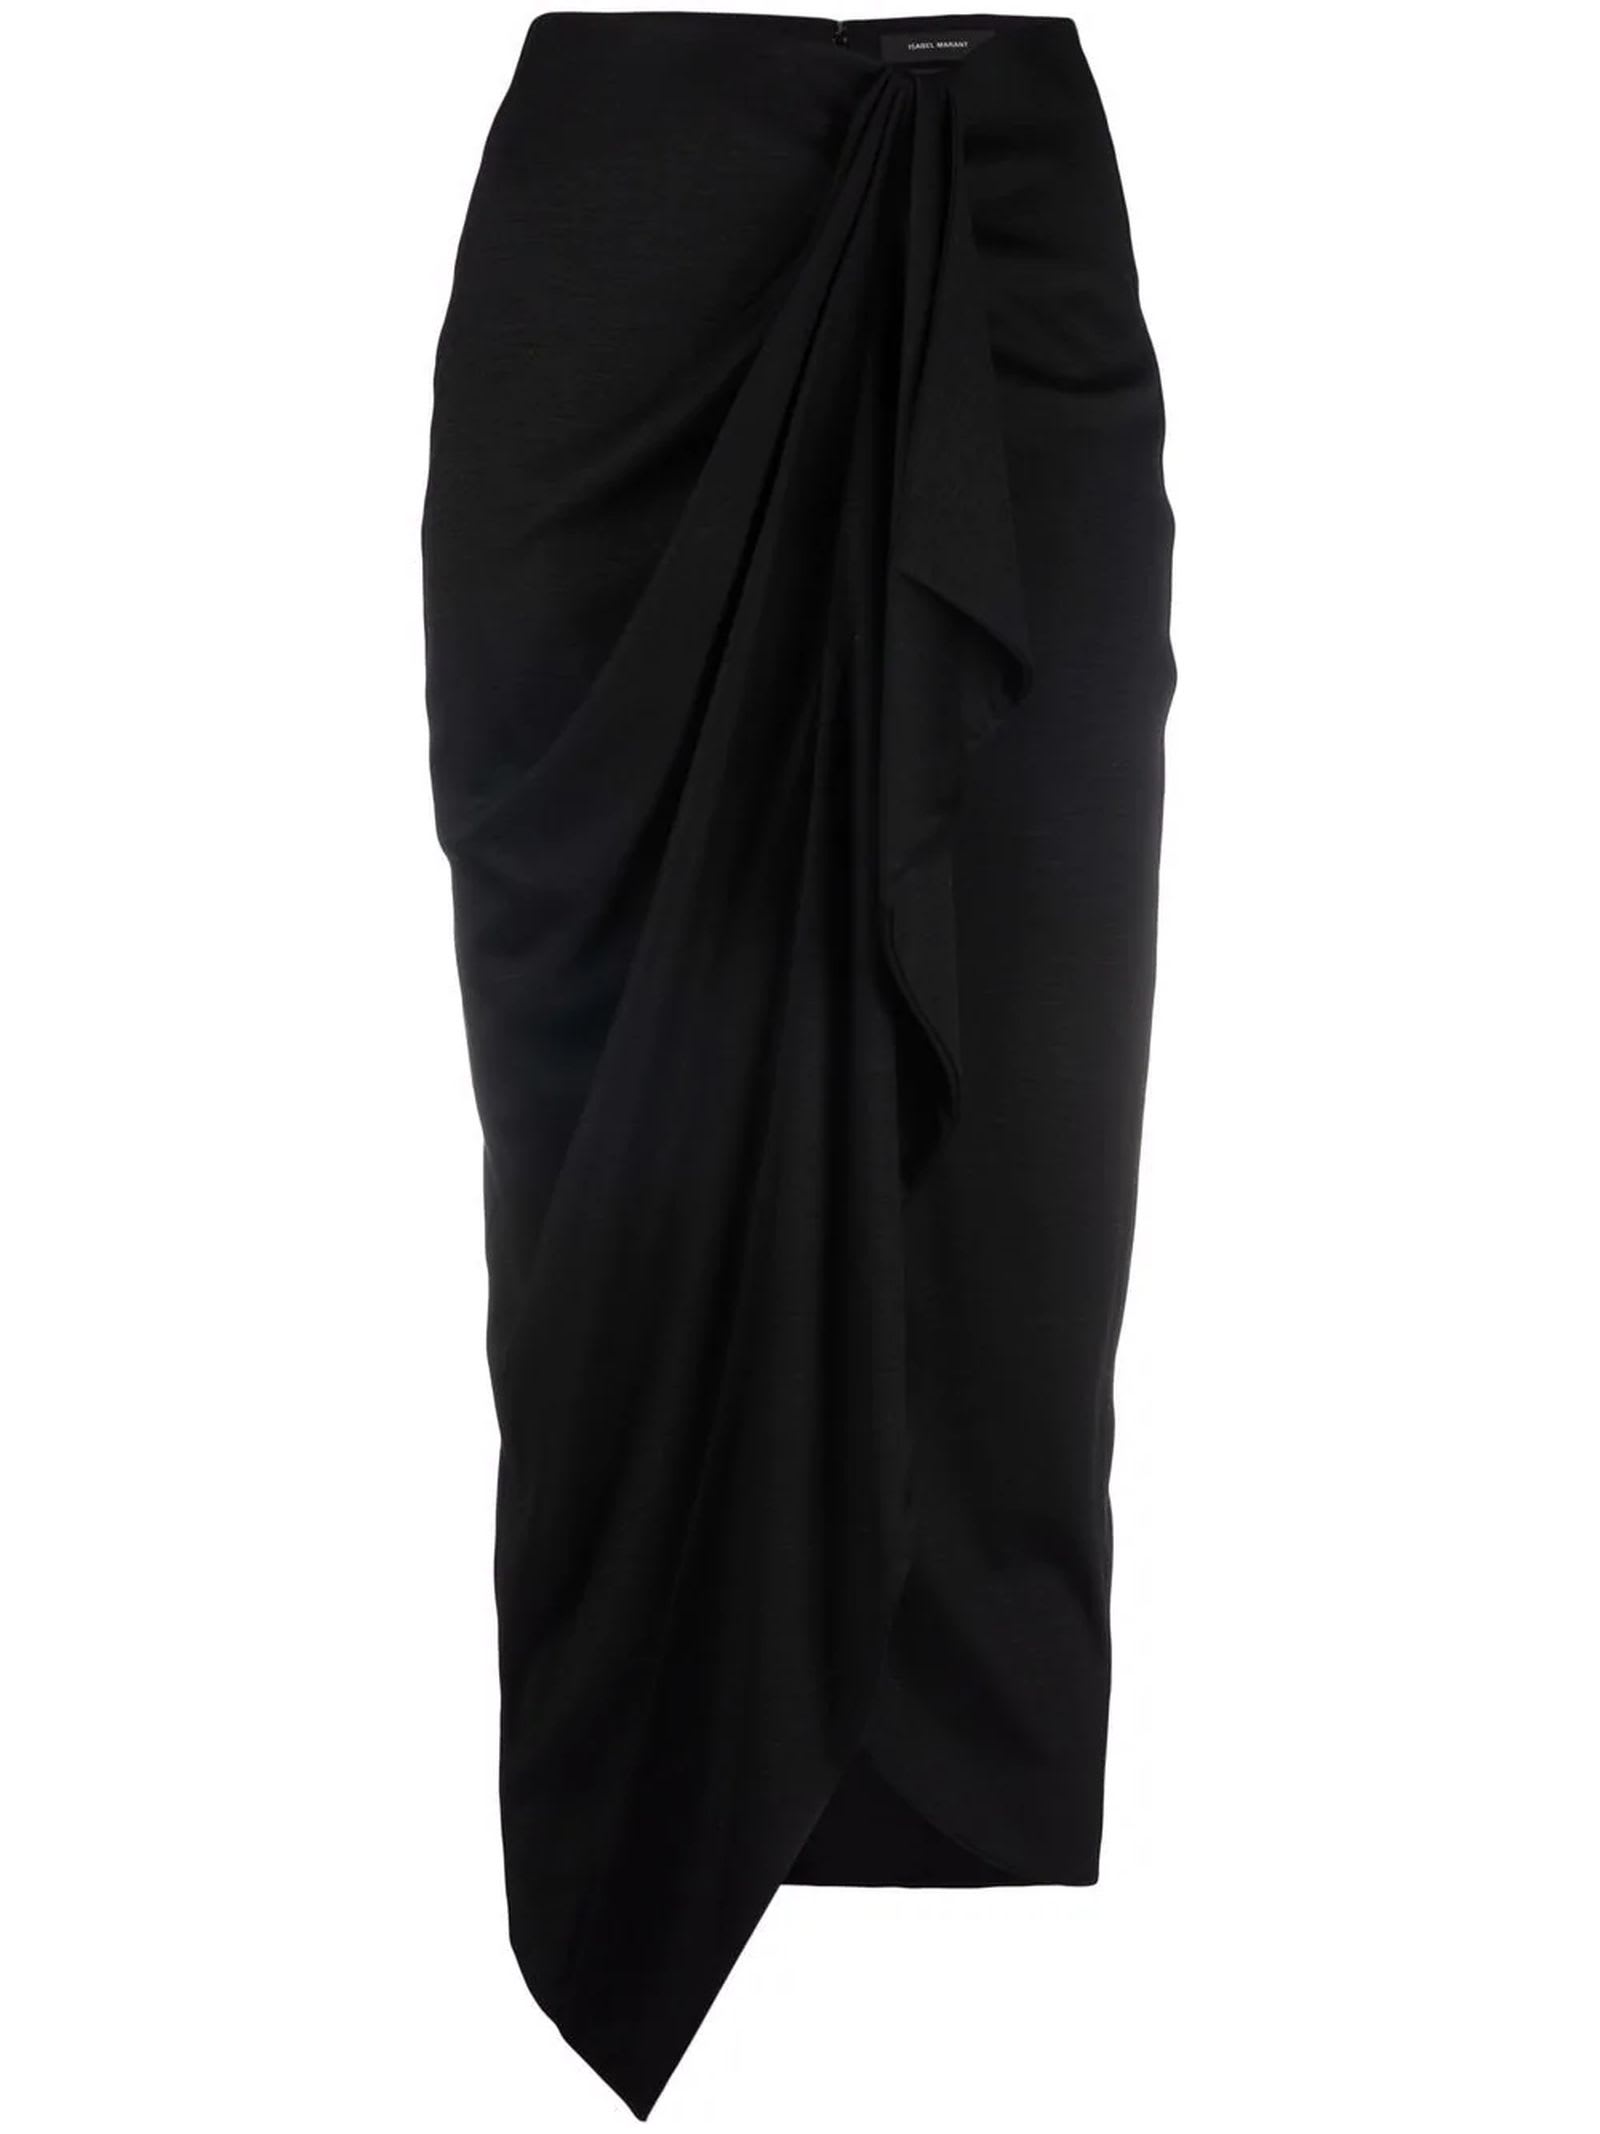 Isabel Marant Black Asymmetric Skirt